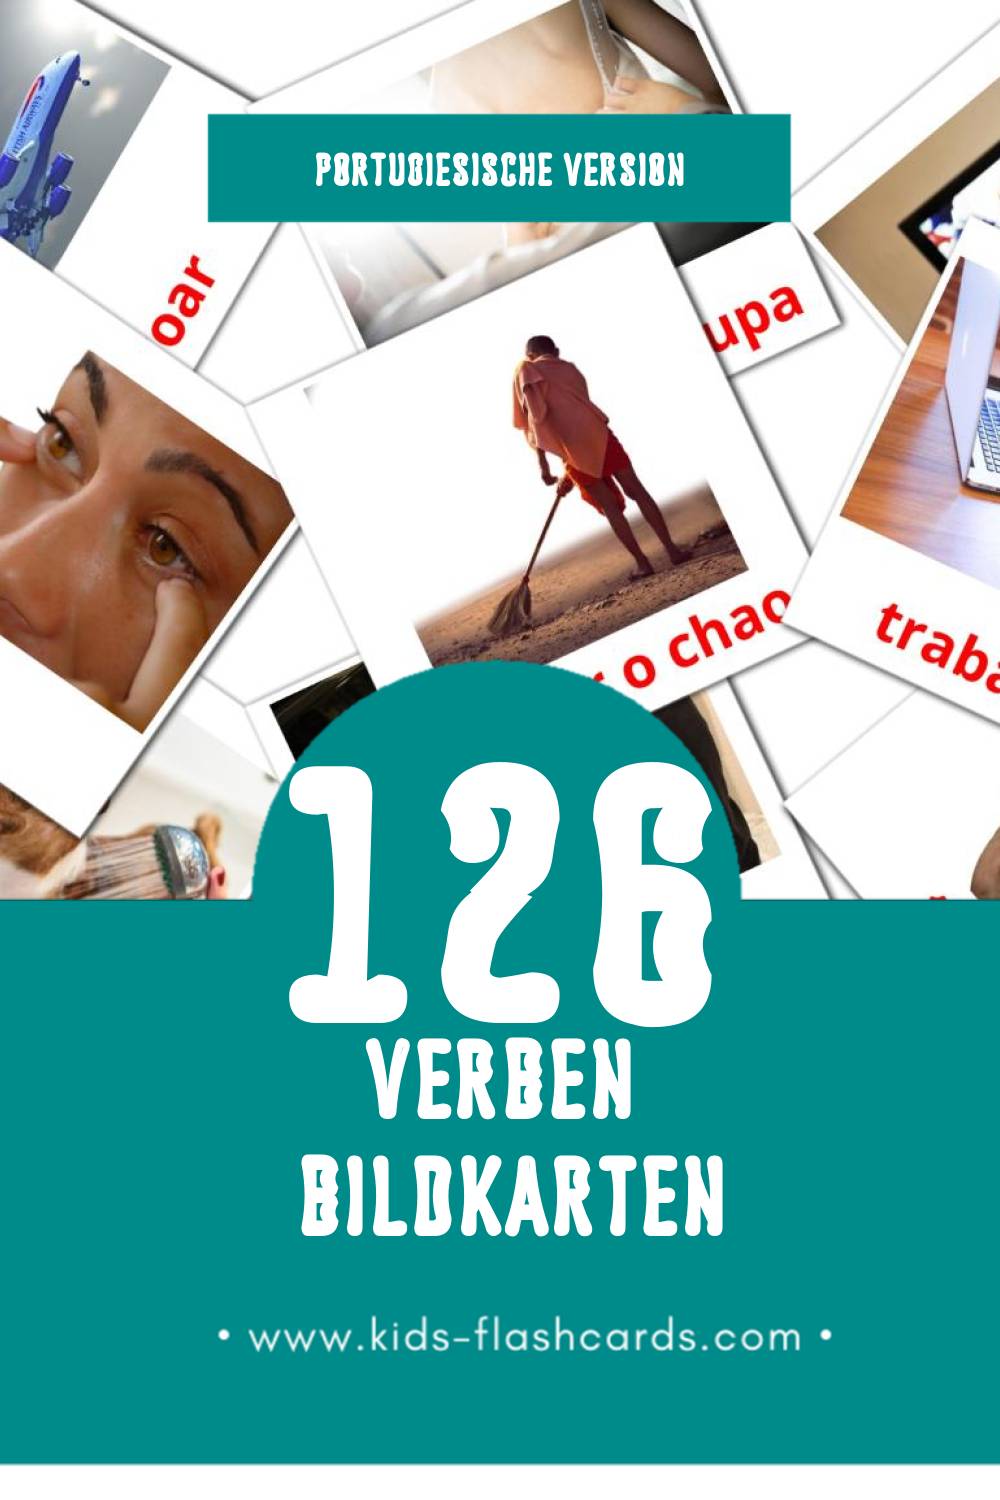 Visual Verbos Flashcards für Kleinkinder (126 Karten in Portugiesisch)